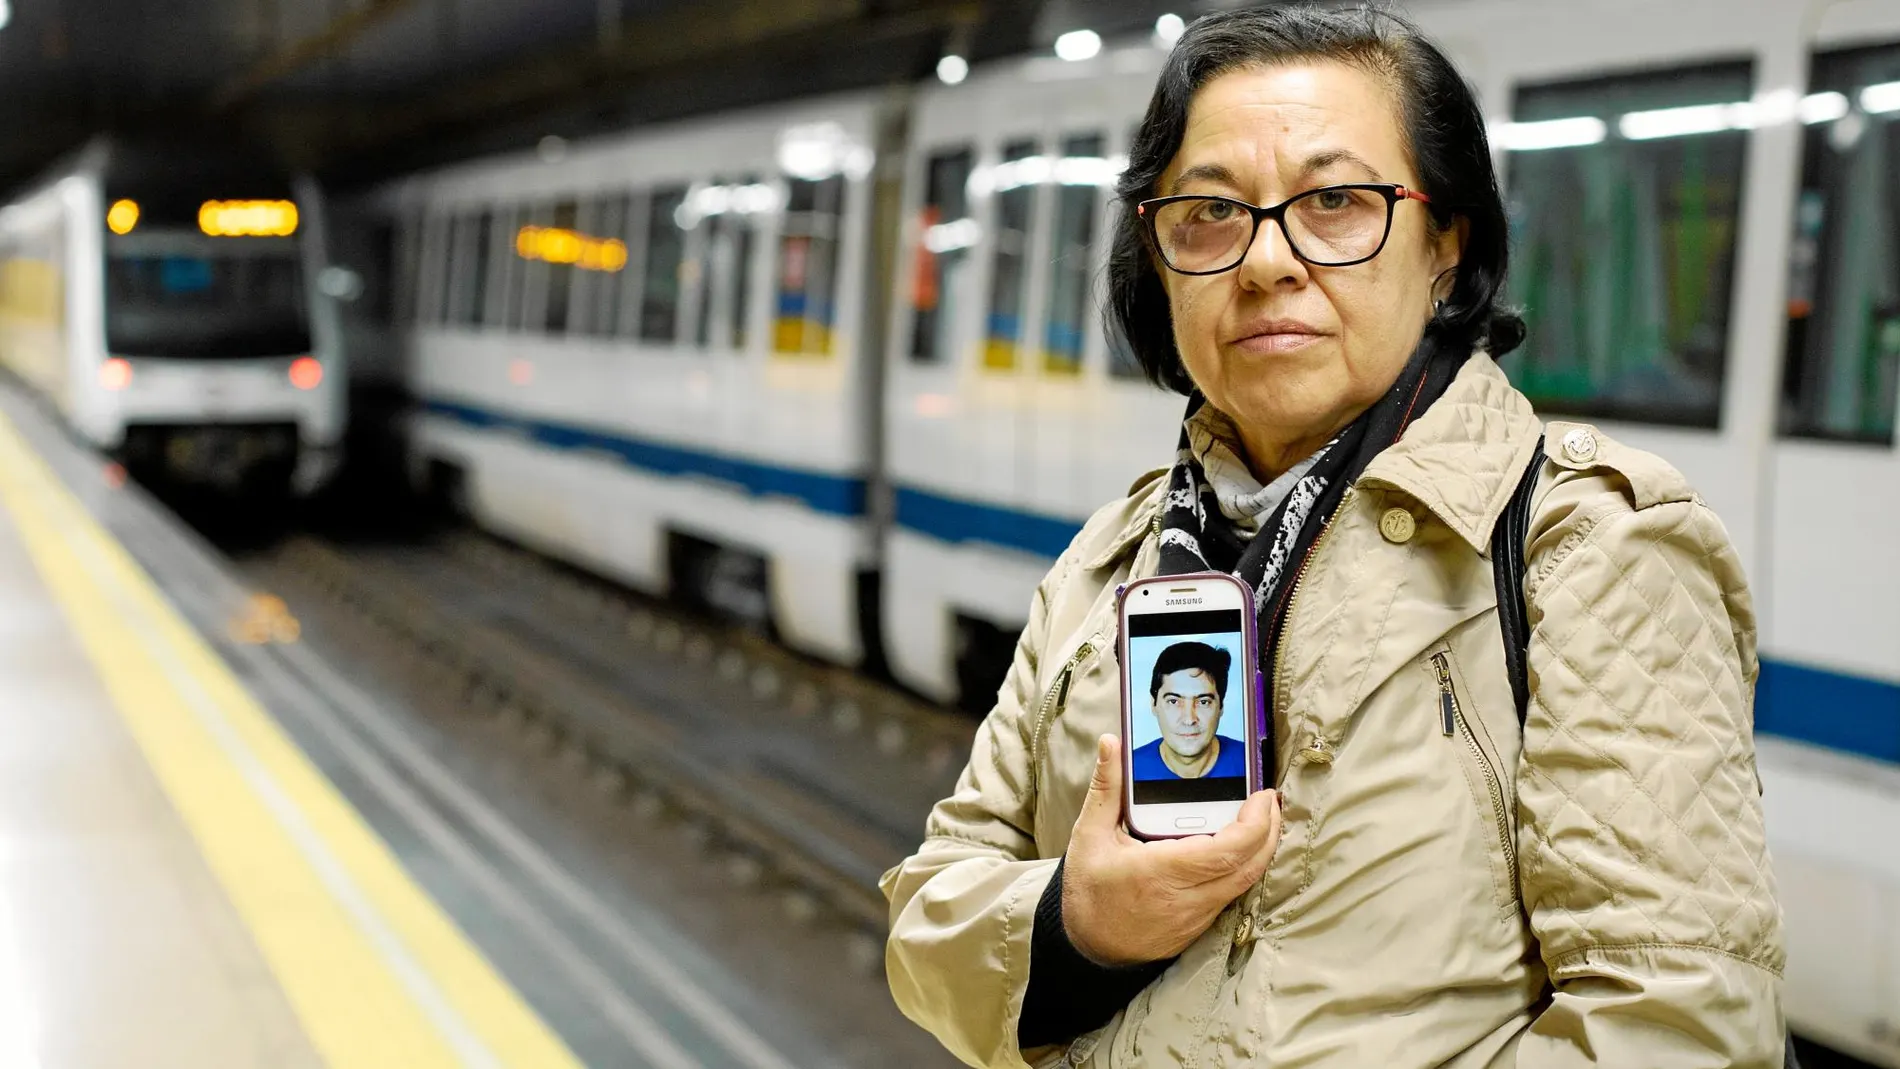 La viuda del trabajador de Metro, Eugenia Martín, reconoció a LA RAZÓN que su marido había sufrido mucho con su enfermedad. Foto: Jesús G. Feria